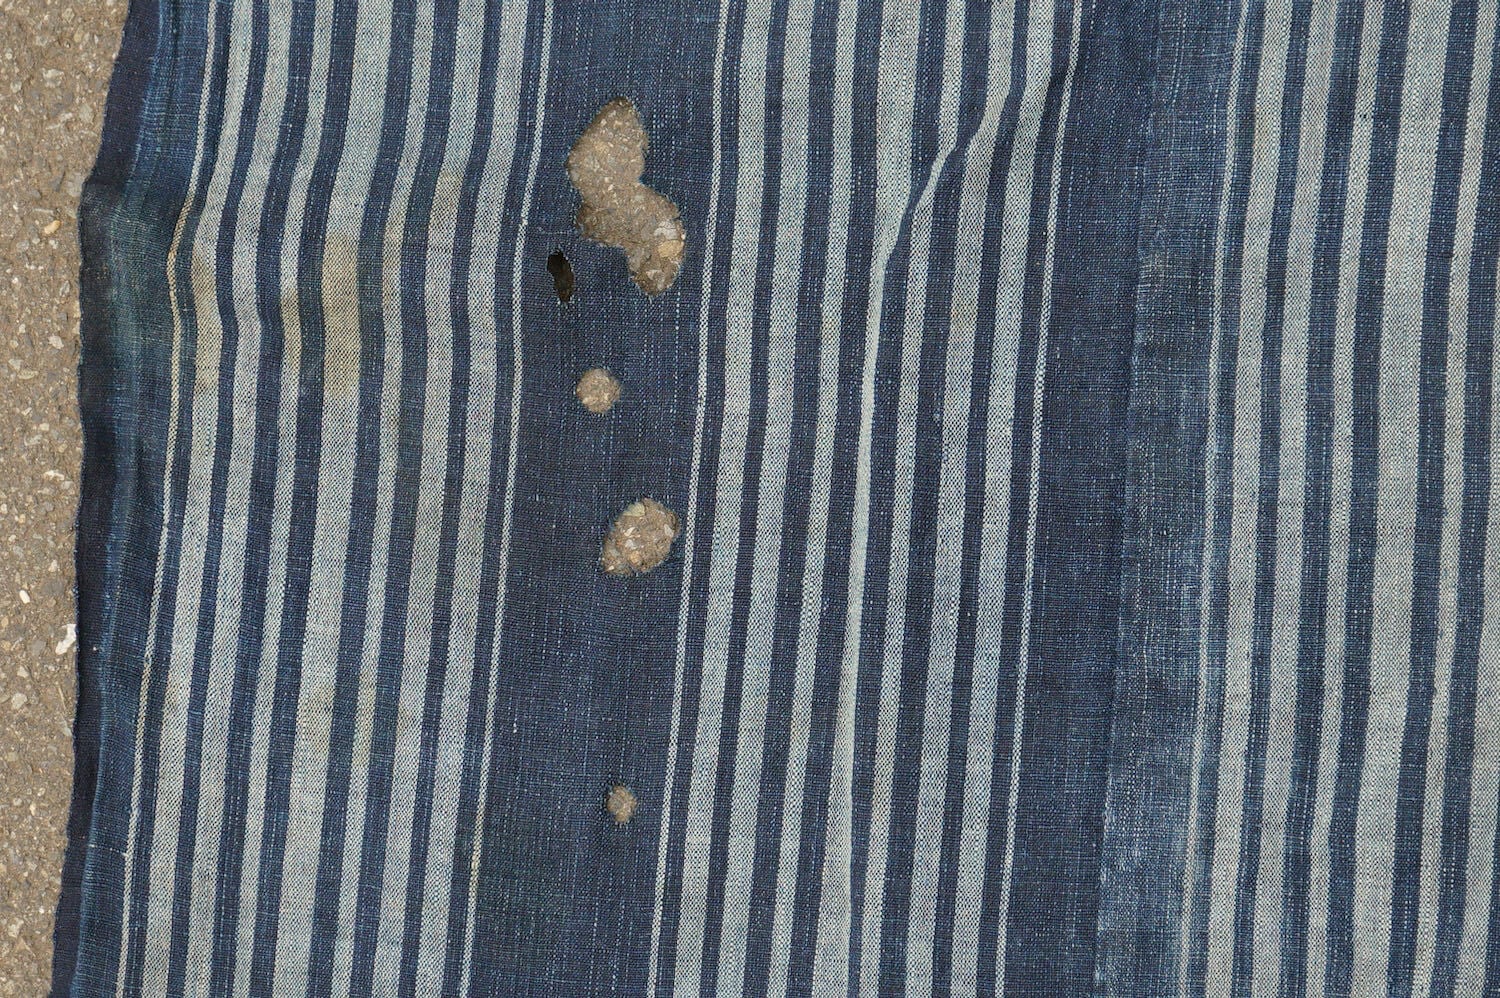 734 縞木綿 ボロ 襤褸 藍染 木綿 古布 継ぎ接ぎ 継ぎ当て アンティーク 